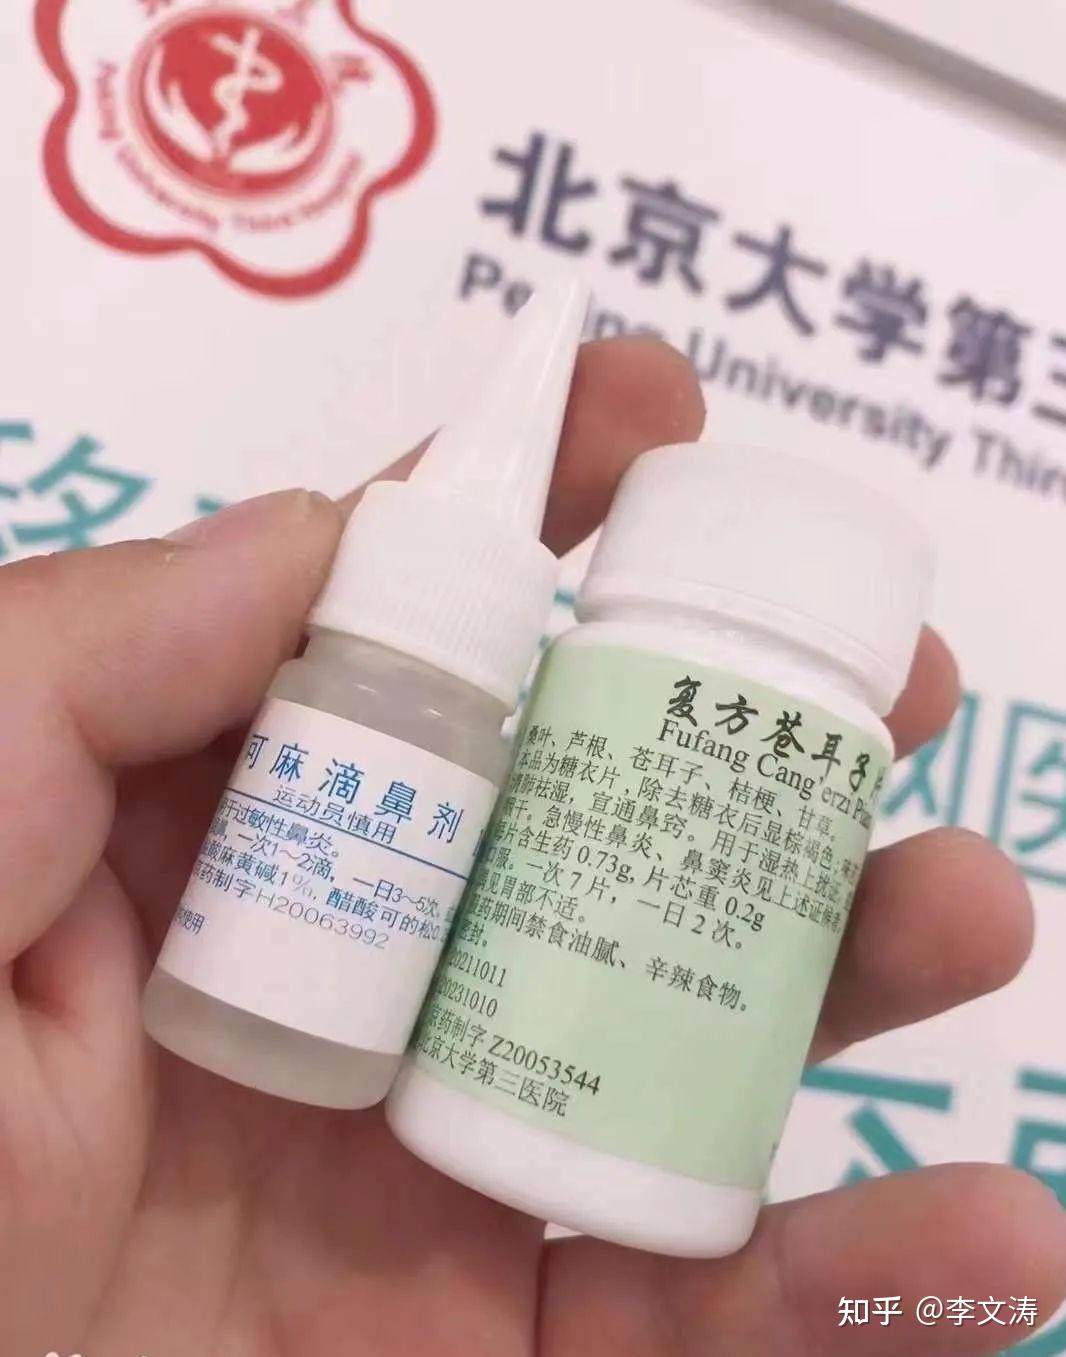 江苏万邦生化医药公司滴鼻液OTC药品包装设计案例图片-西风东韵